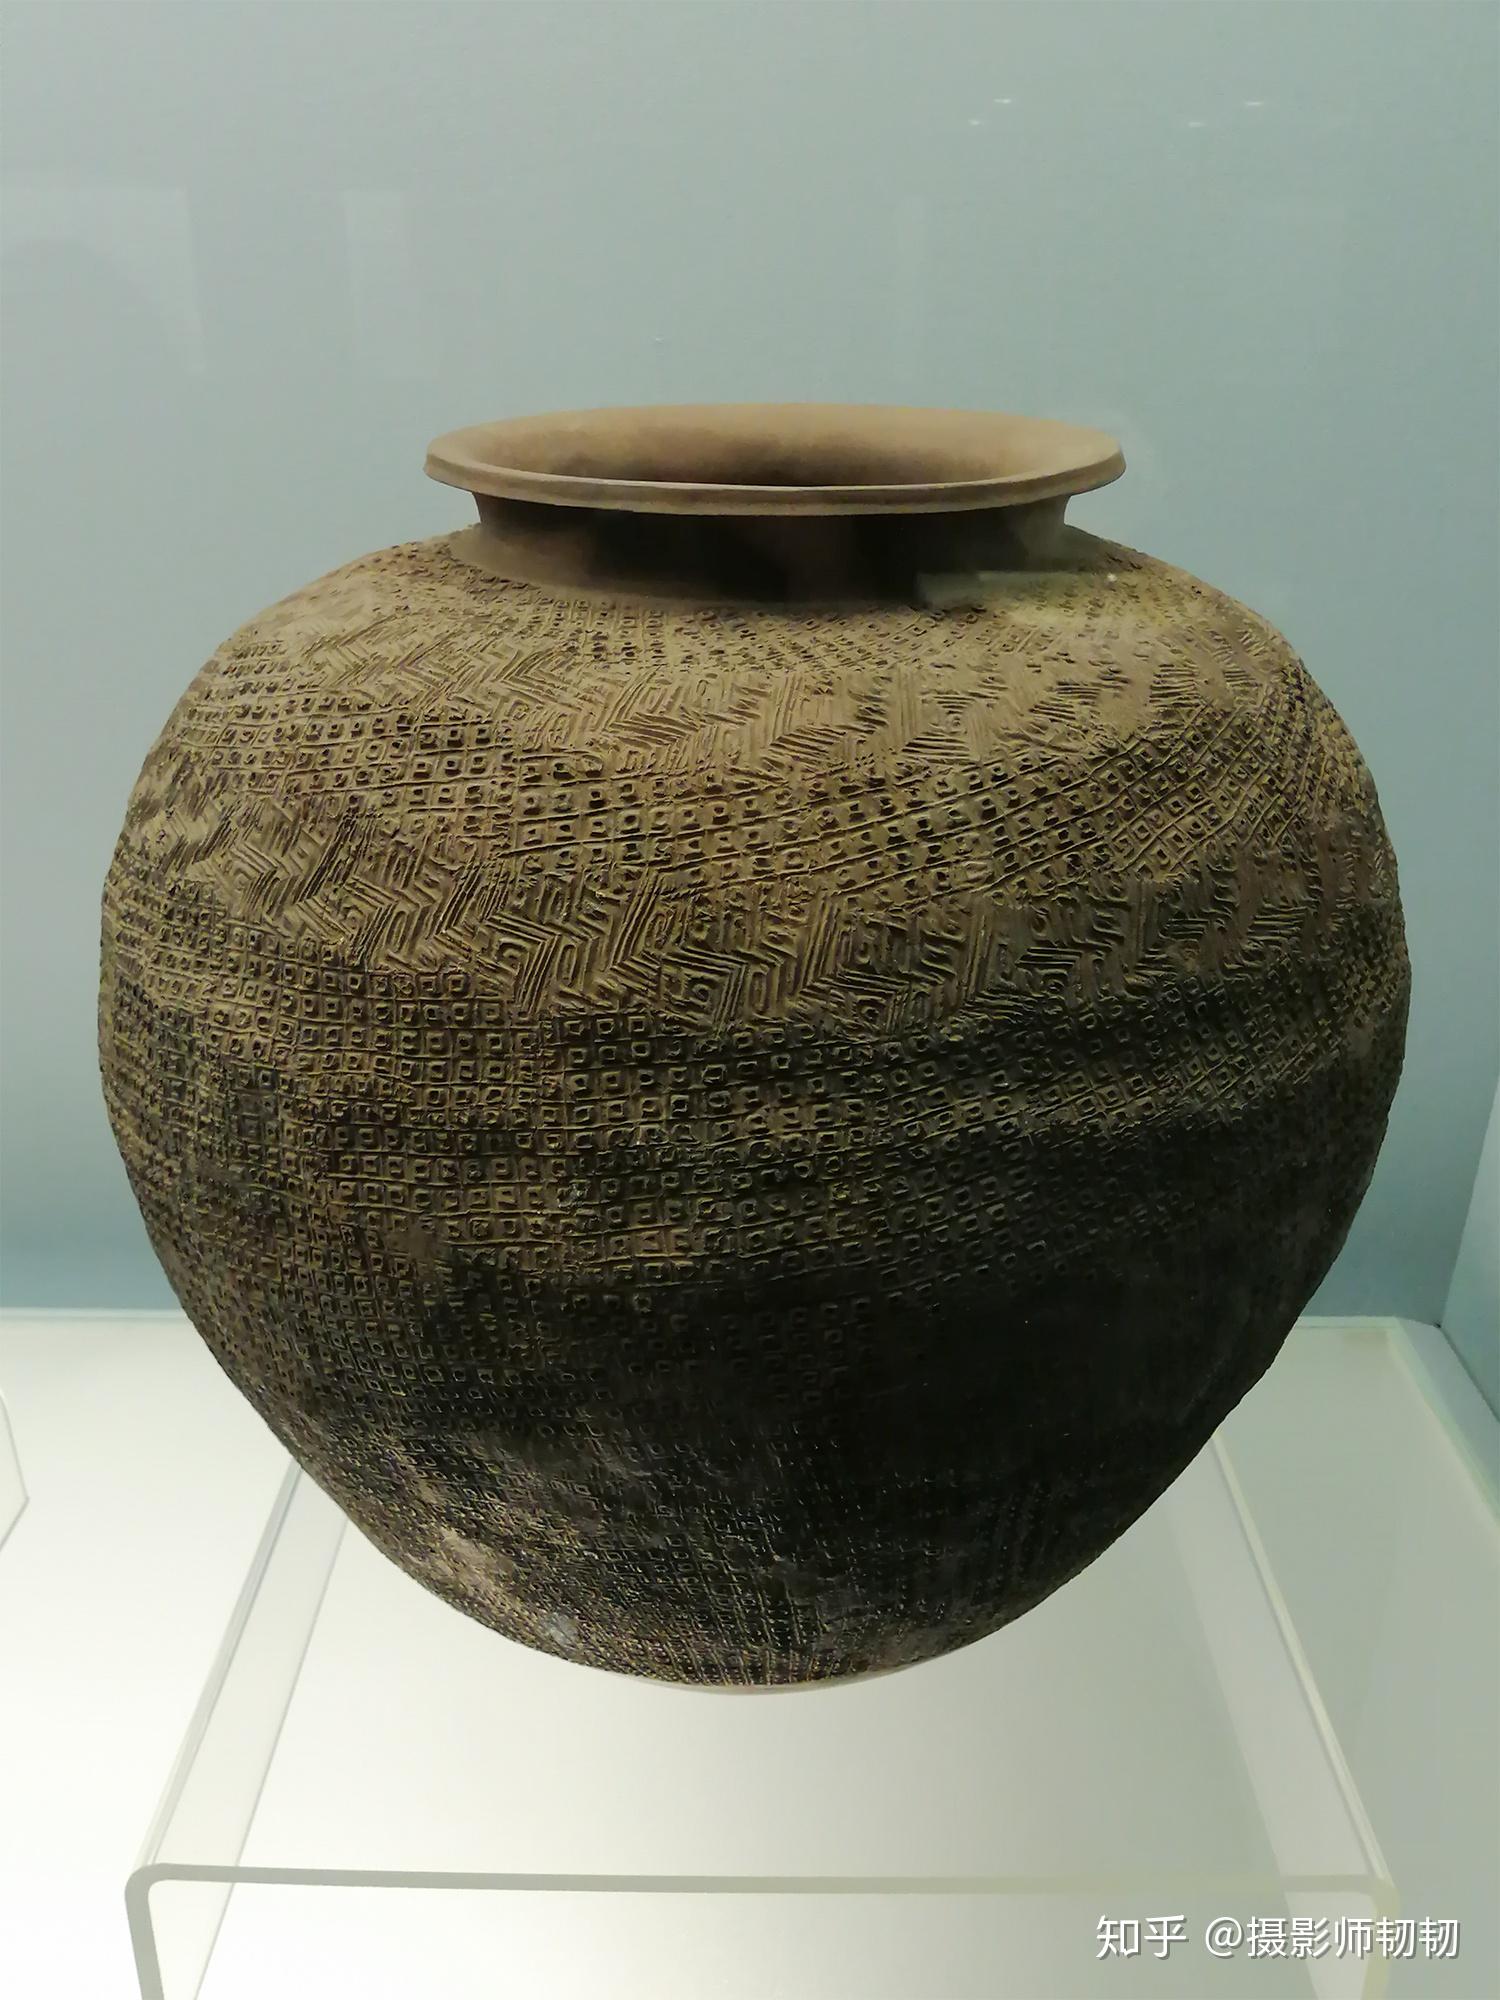 上海博物馆参观笔记02陶器的衰退和原始瓷器的出现